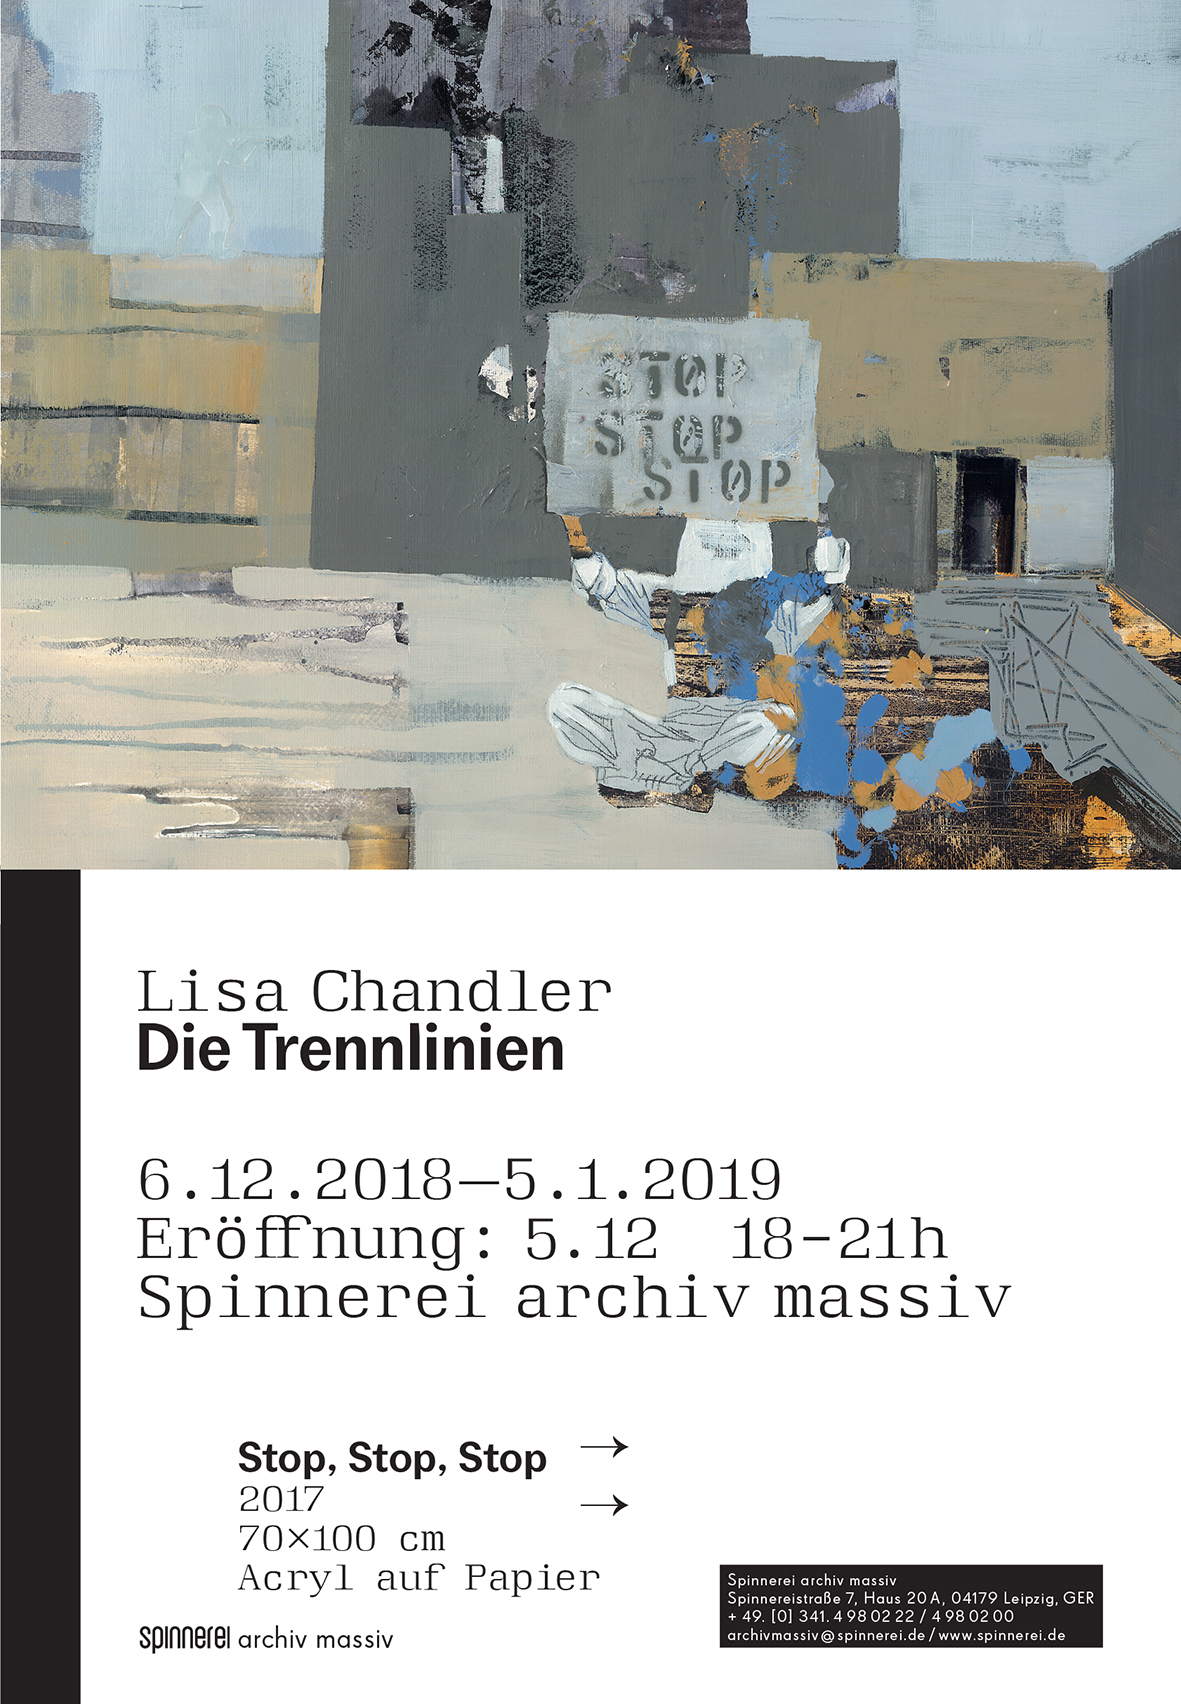 Lisa Chandler, Einladungskarte für ihre Ausstellung "Die Trennlinien" im archiv massiv auf dem Alten Baumwollspinnereigelände Leipzig.